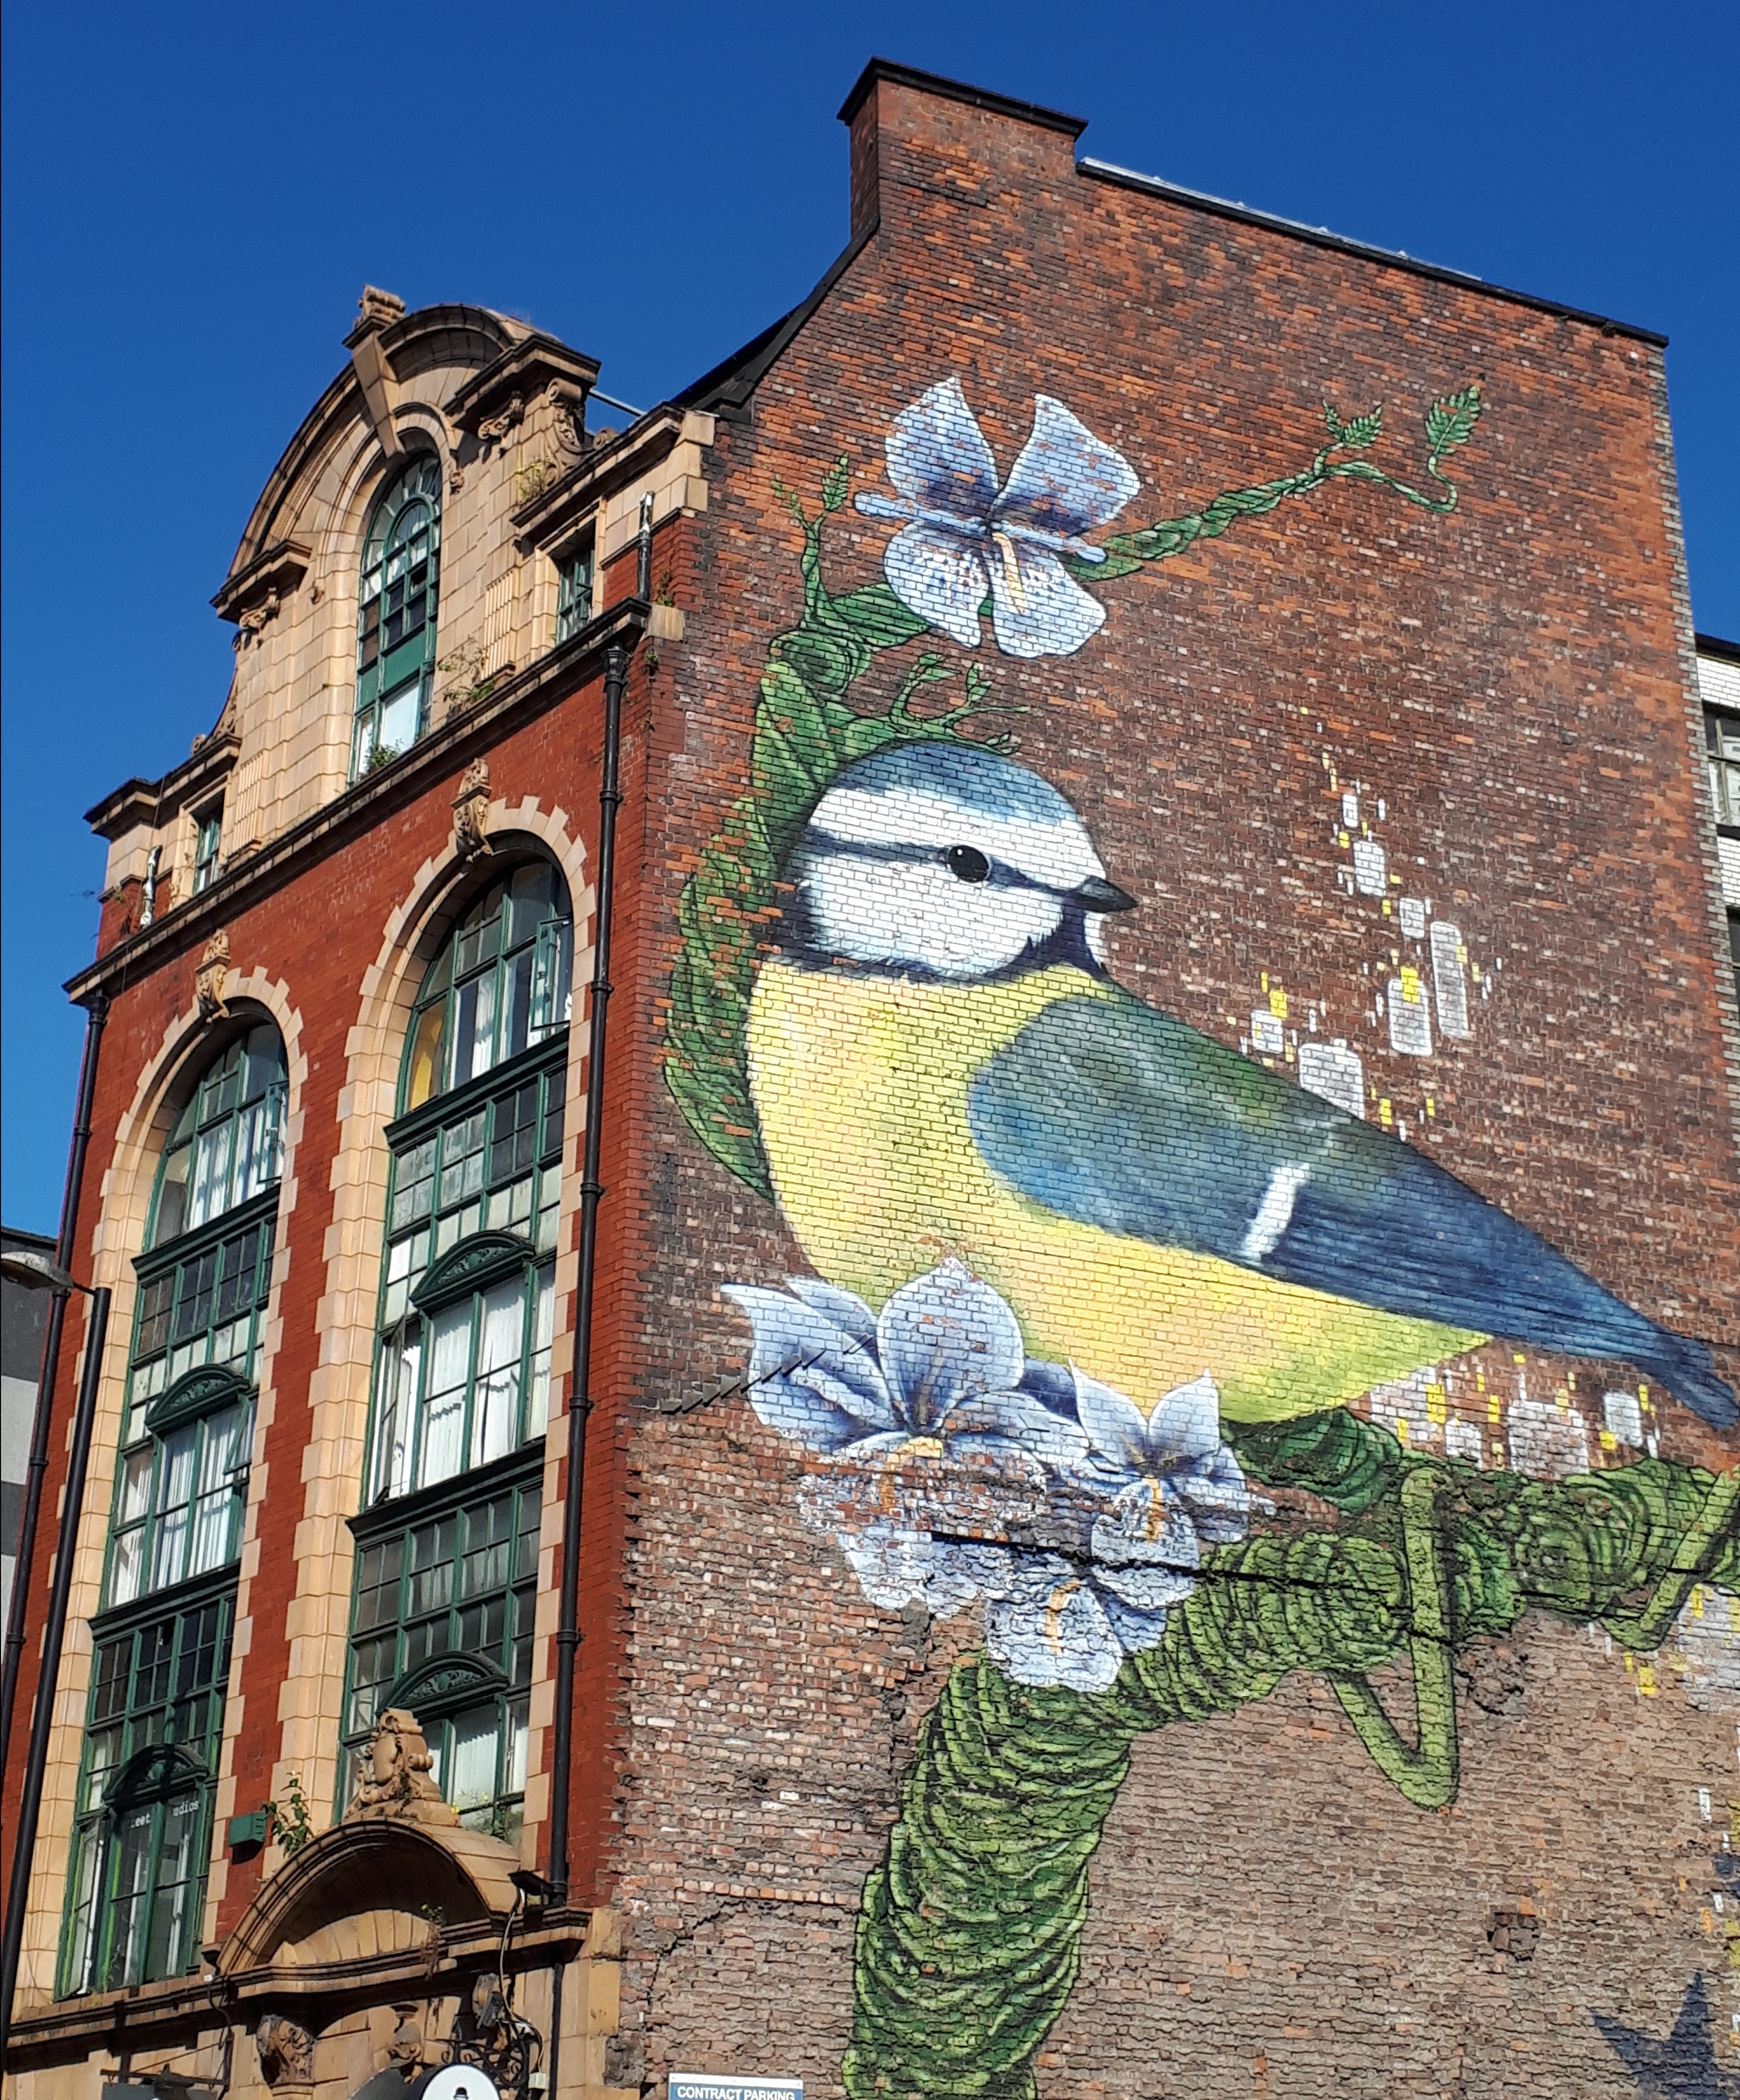 Precioso mural de unos pájaros en un edificio de la calle. Una de las mejores cosas que ver en Manchester sin duda es el street art.